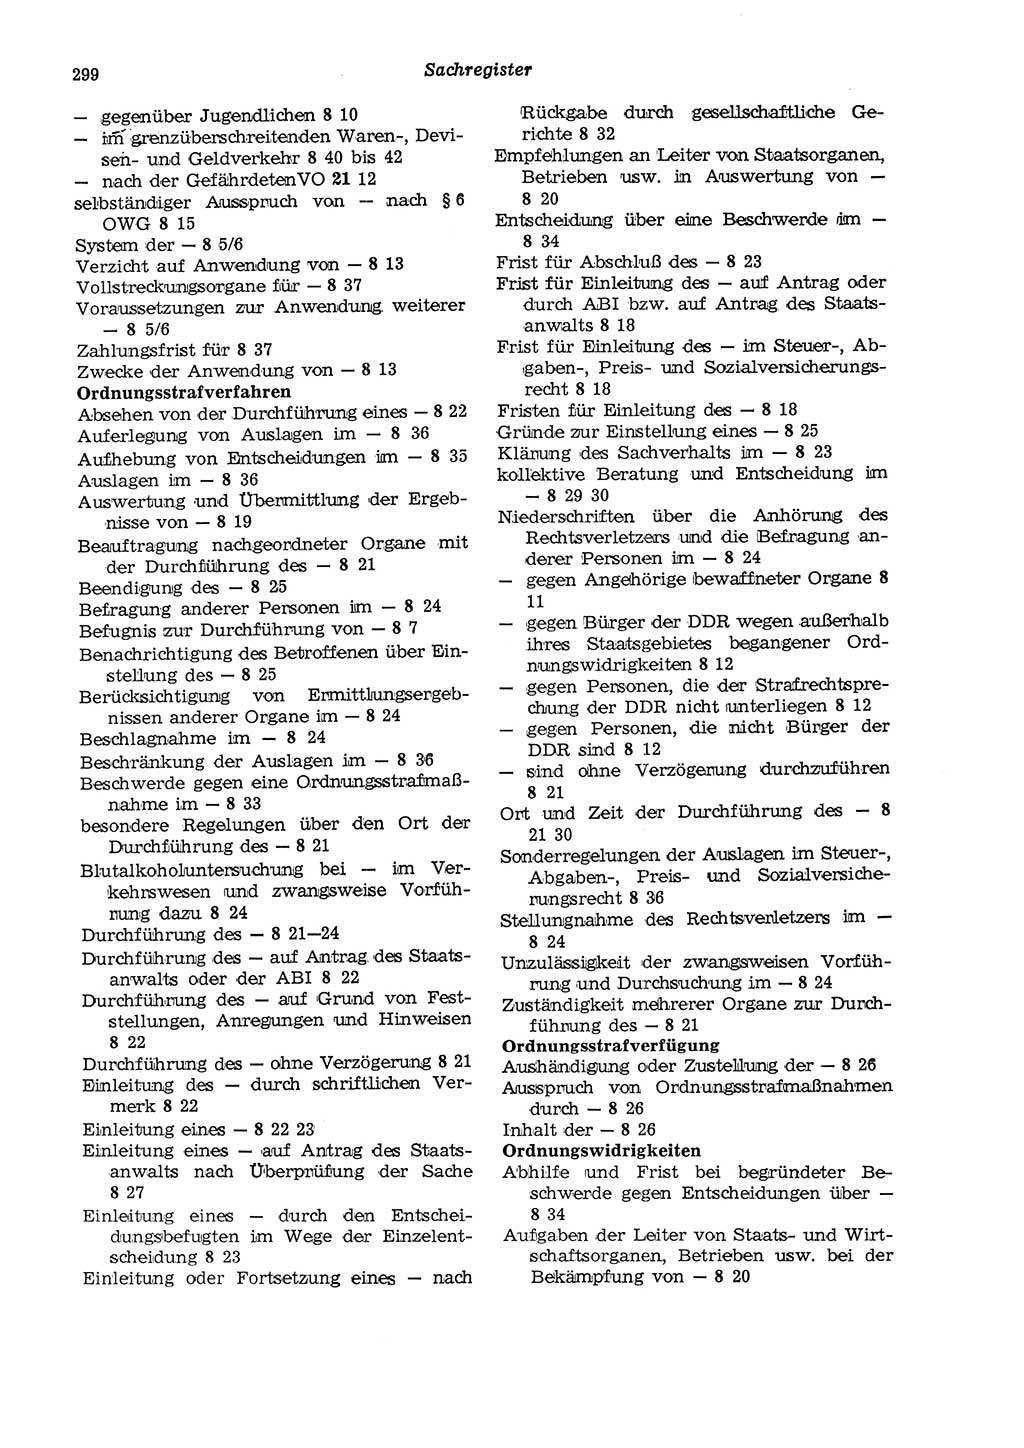 Strafgesetzbuch (StGB) der Deutschen Demokratischen Republik (DDR) und angrenzende Gesetze und Bestimmungen 1975, Seite 299 (StGB DDR Ges. Best. 1975, S. 299)